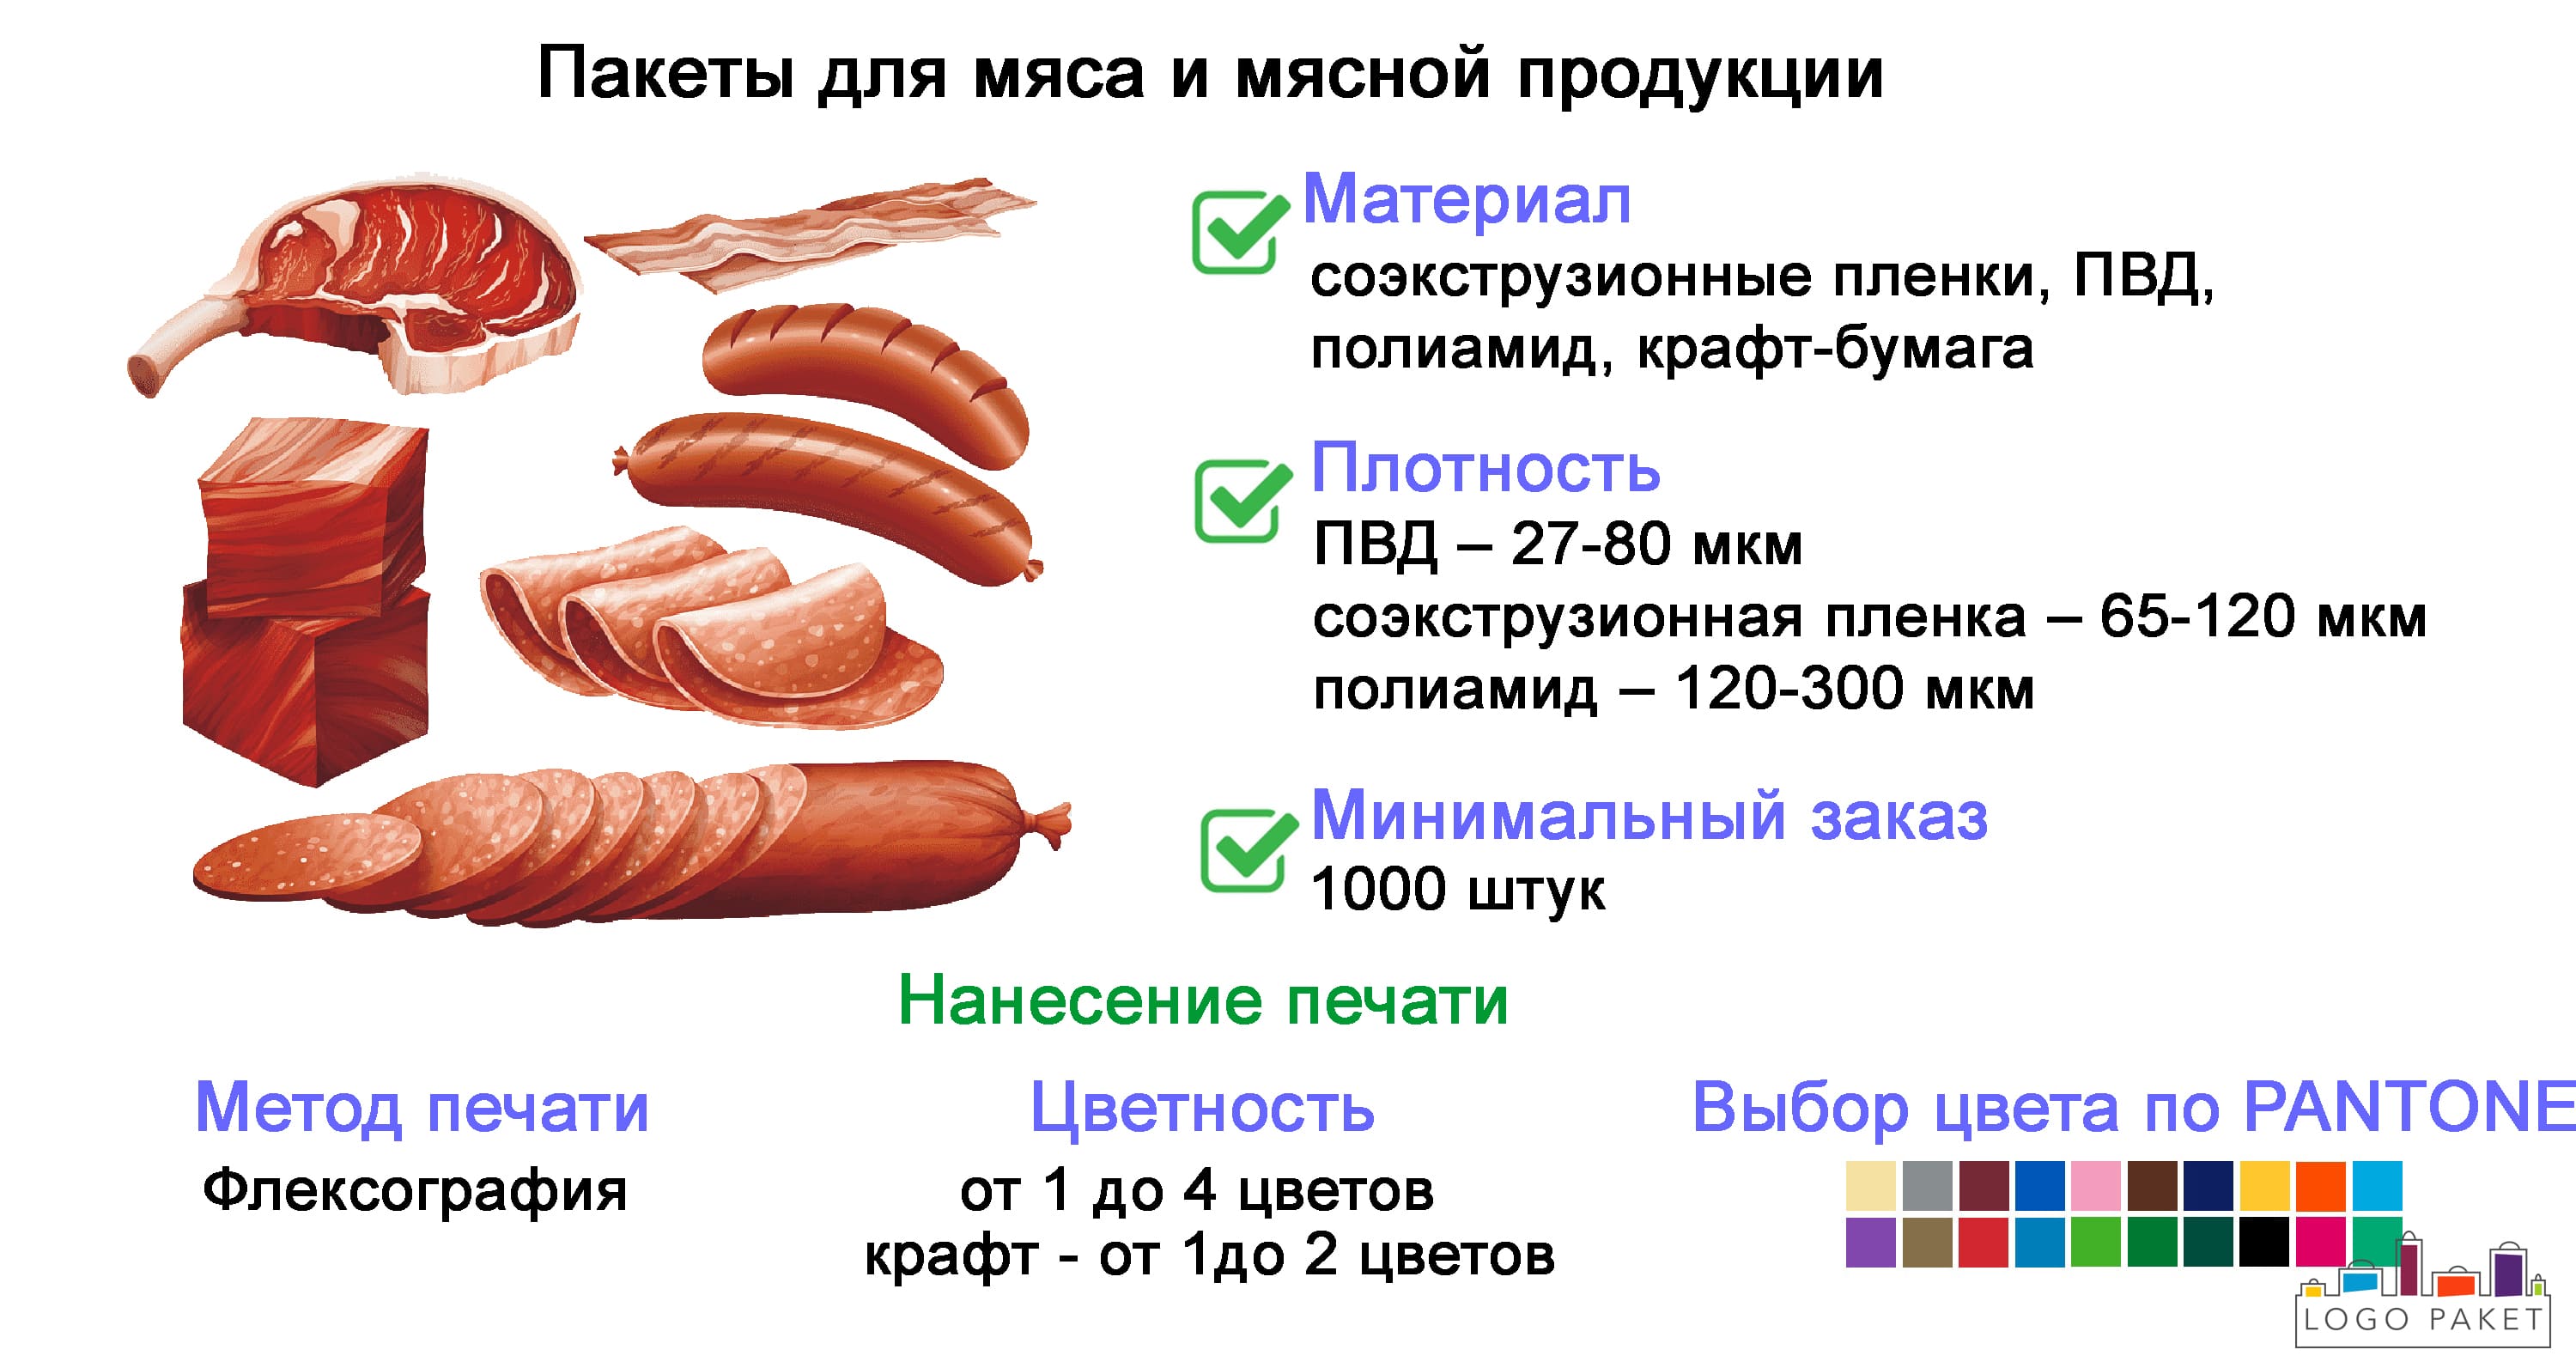 Пакеты для мяса и мясной продукции инфографика с основными характеристиками.